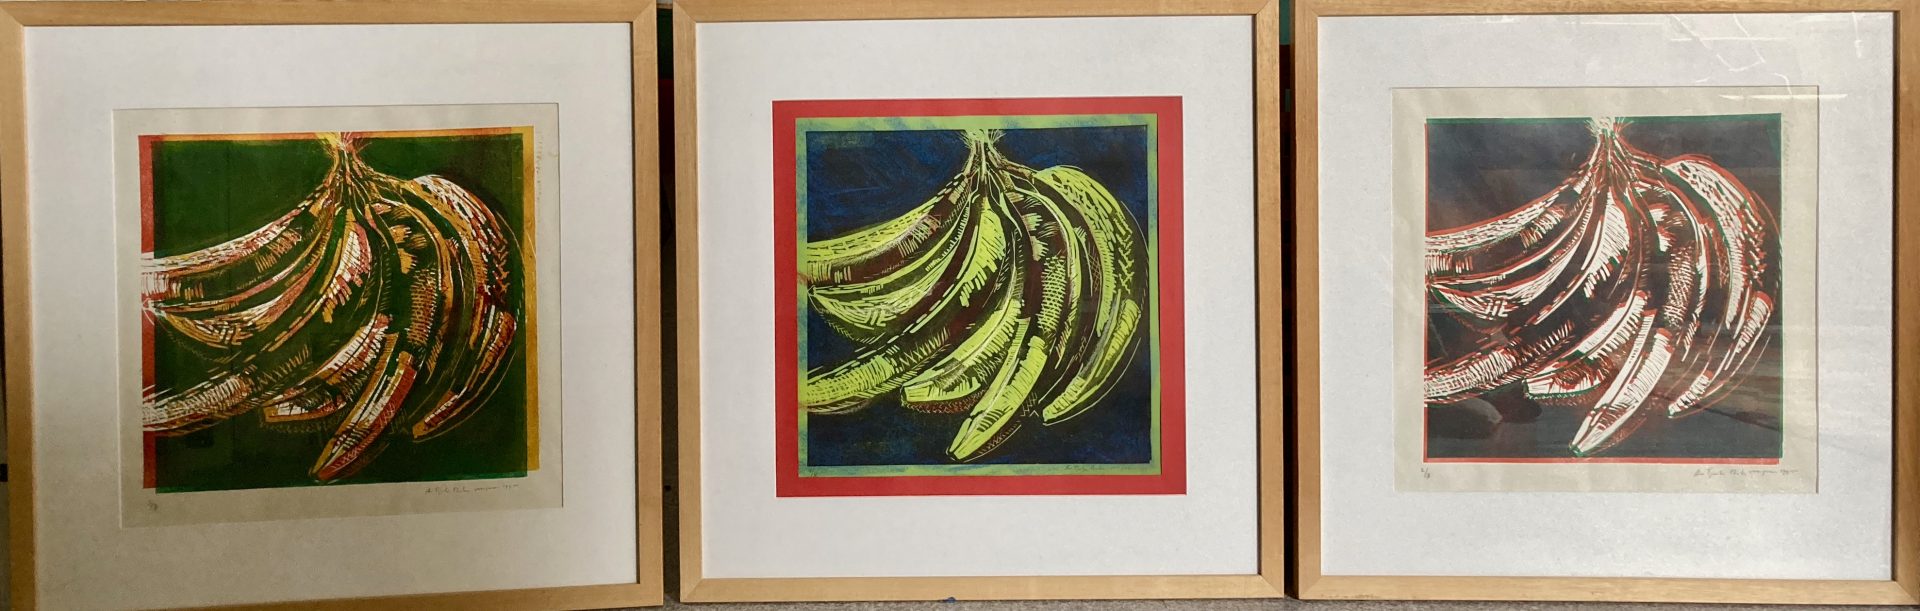 Drie keer bananen